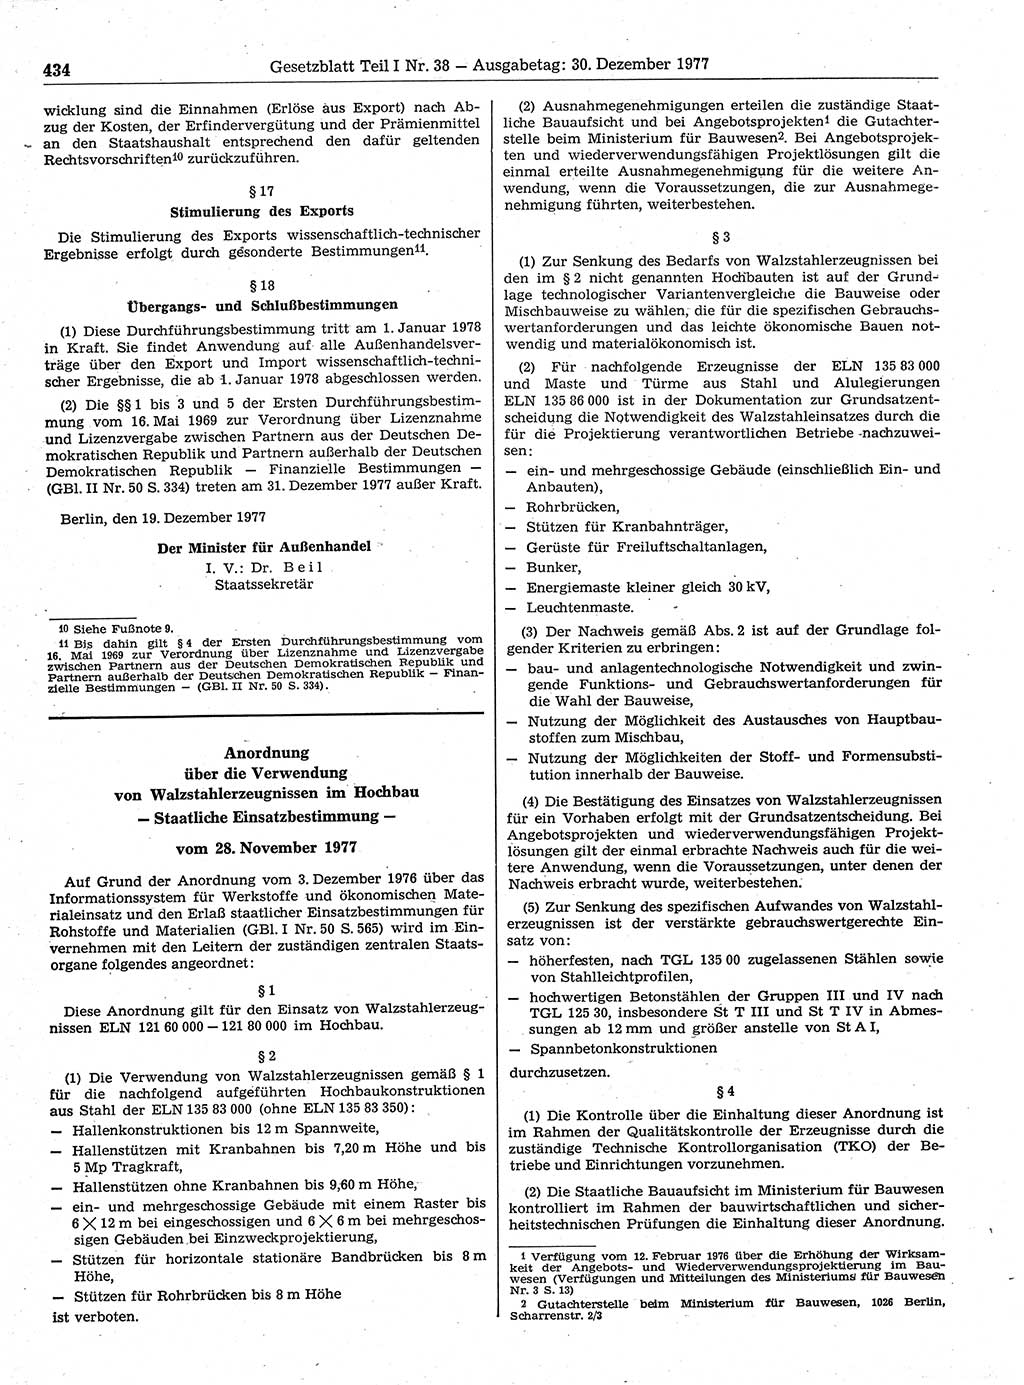 Gesetzblatt (GBl.) der Deutschen Demokratischen Republik (DDR) Teil Ⅰ 1977, Seite 434 (GBl. DDR Ⅰ 1977, S. 434)